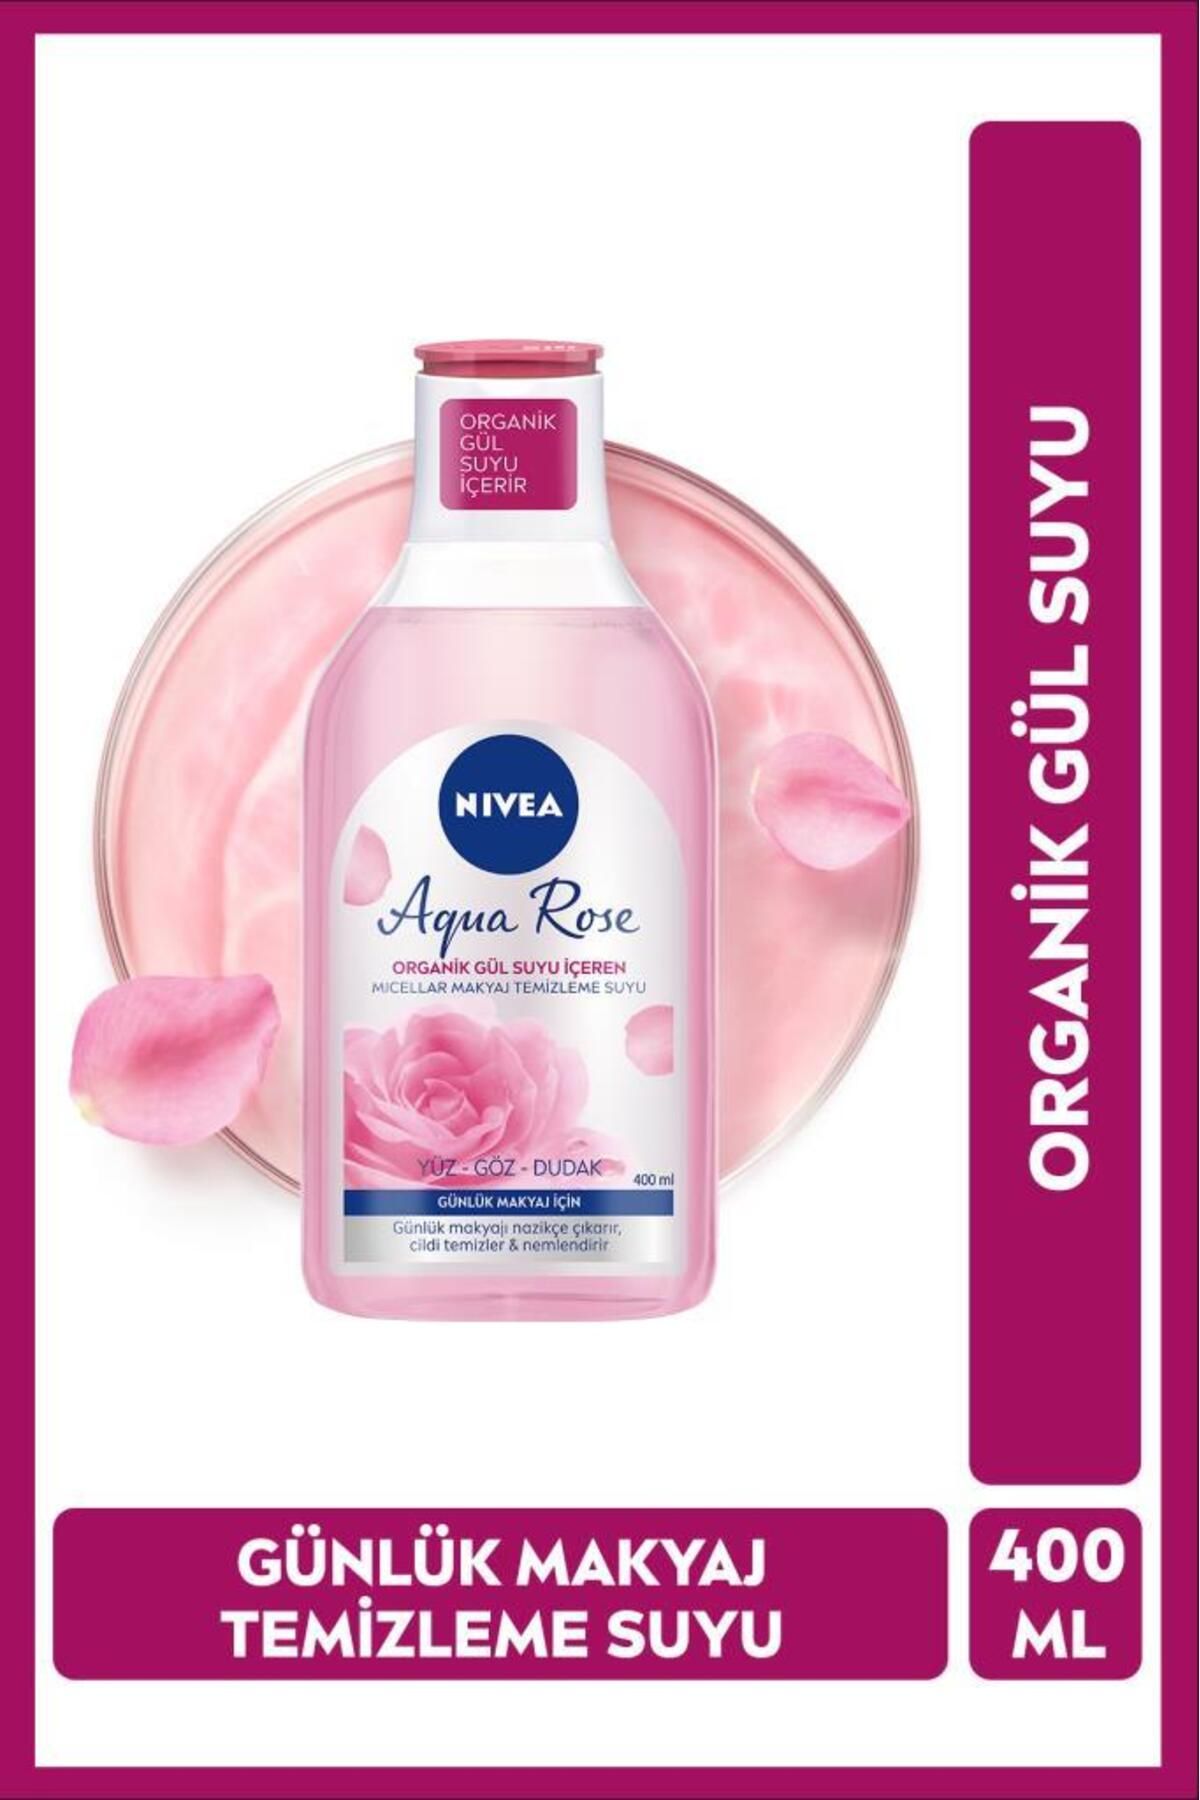 NIVEA Aqua Rose Organik Gül Suyu İçeren Micellar Makyaj Temizleme Suyu 400ml, Günlük Makyaj, Nemlendirici